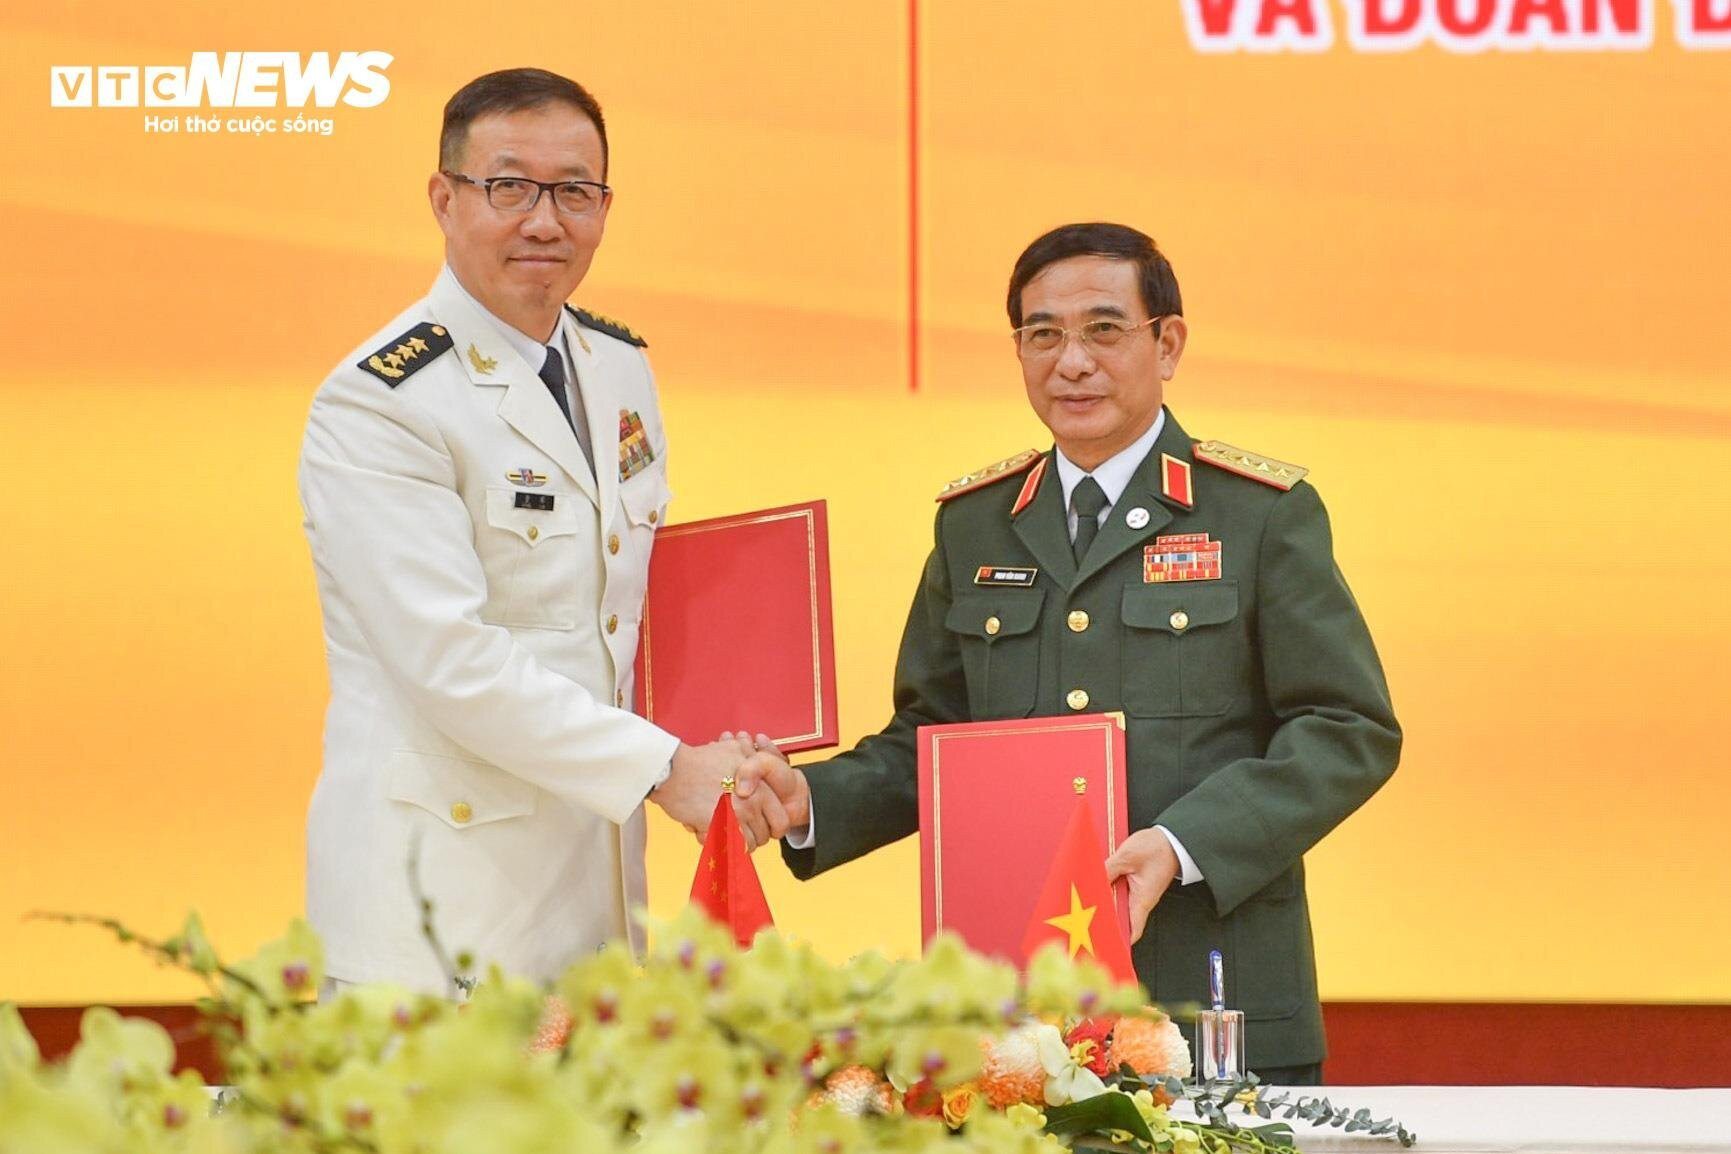 Đại tướng Phan Văn Giang, Bộ trưởng Quốc phòng Việt Nam và Thượng tướng Đổng Quân, Bộ trưởng Quốc phòng Trung Quốc.